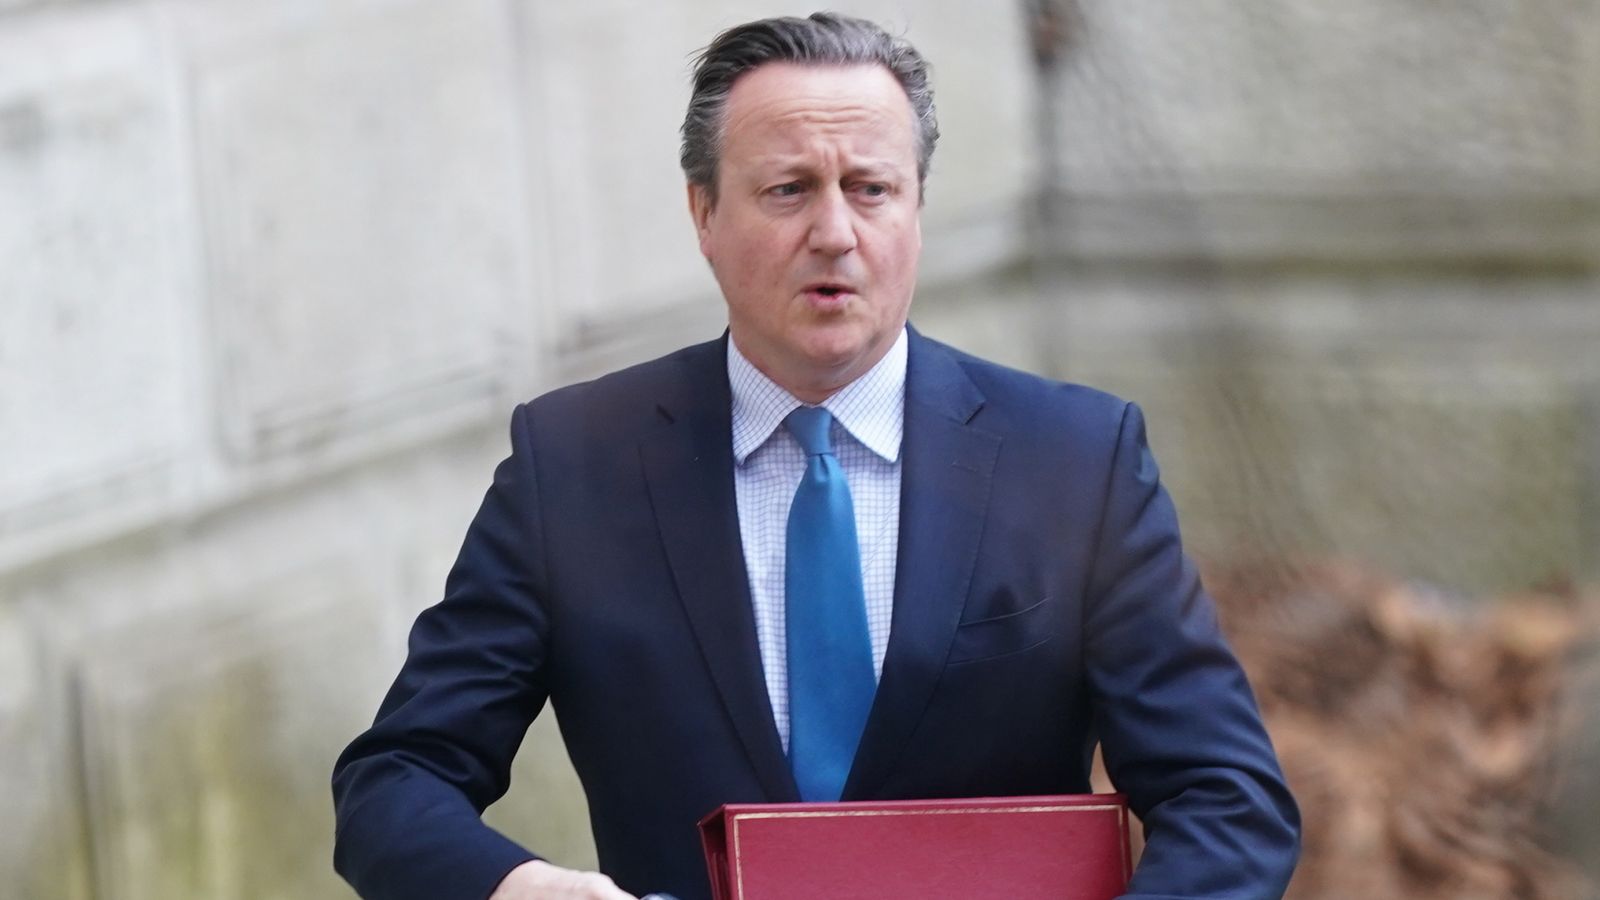 Обединеното кралство ще предупреди Израел за помощта за Газа, тъй като търпението му се изчерпва, казва лорд Камерън